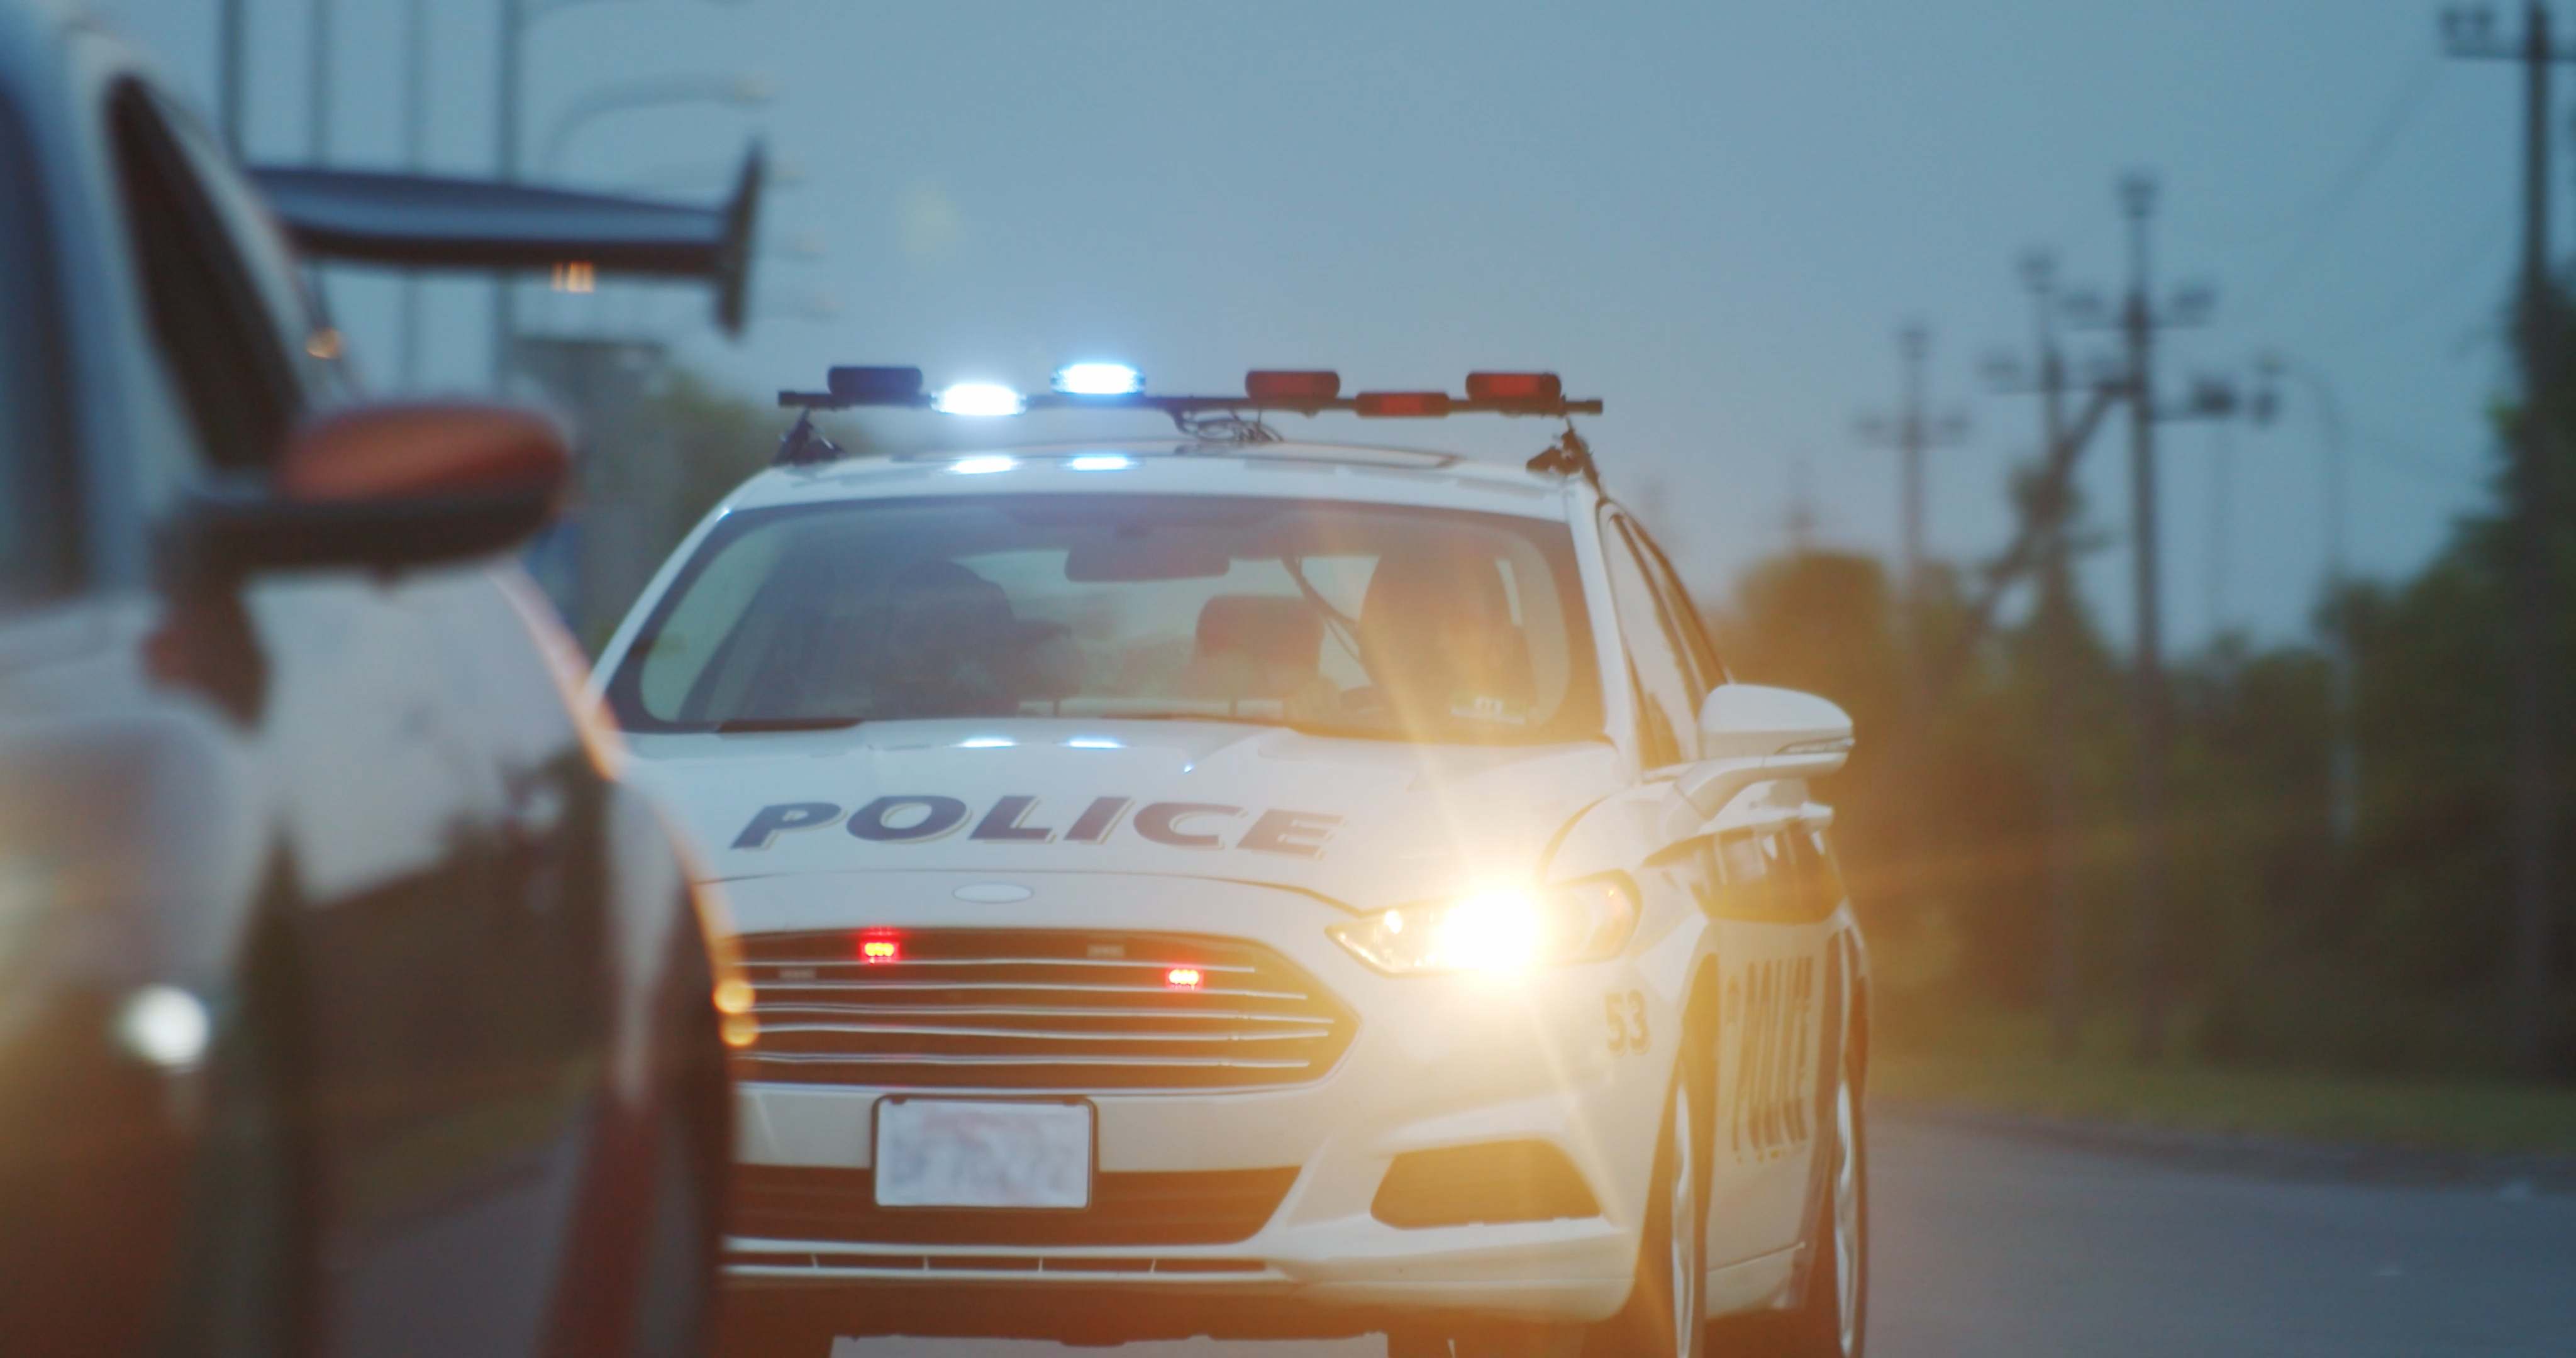 Ein Polizeiauto | Quelle: Shutterstock